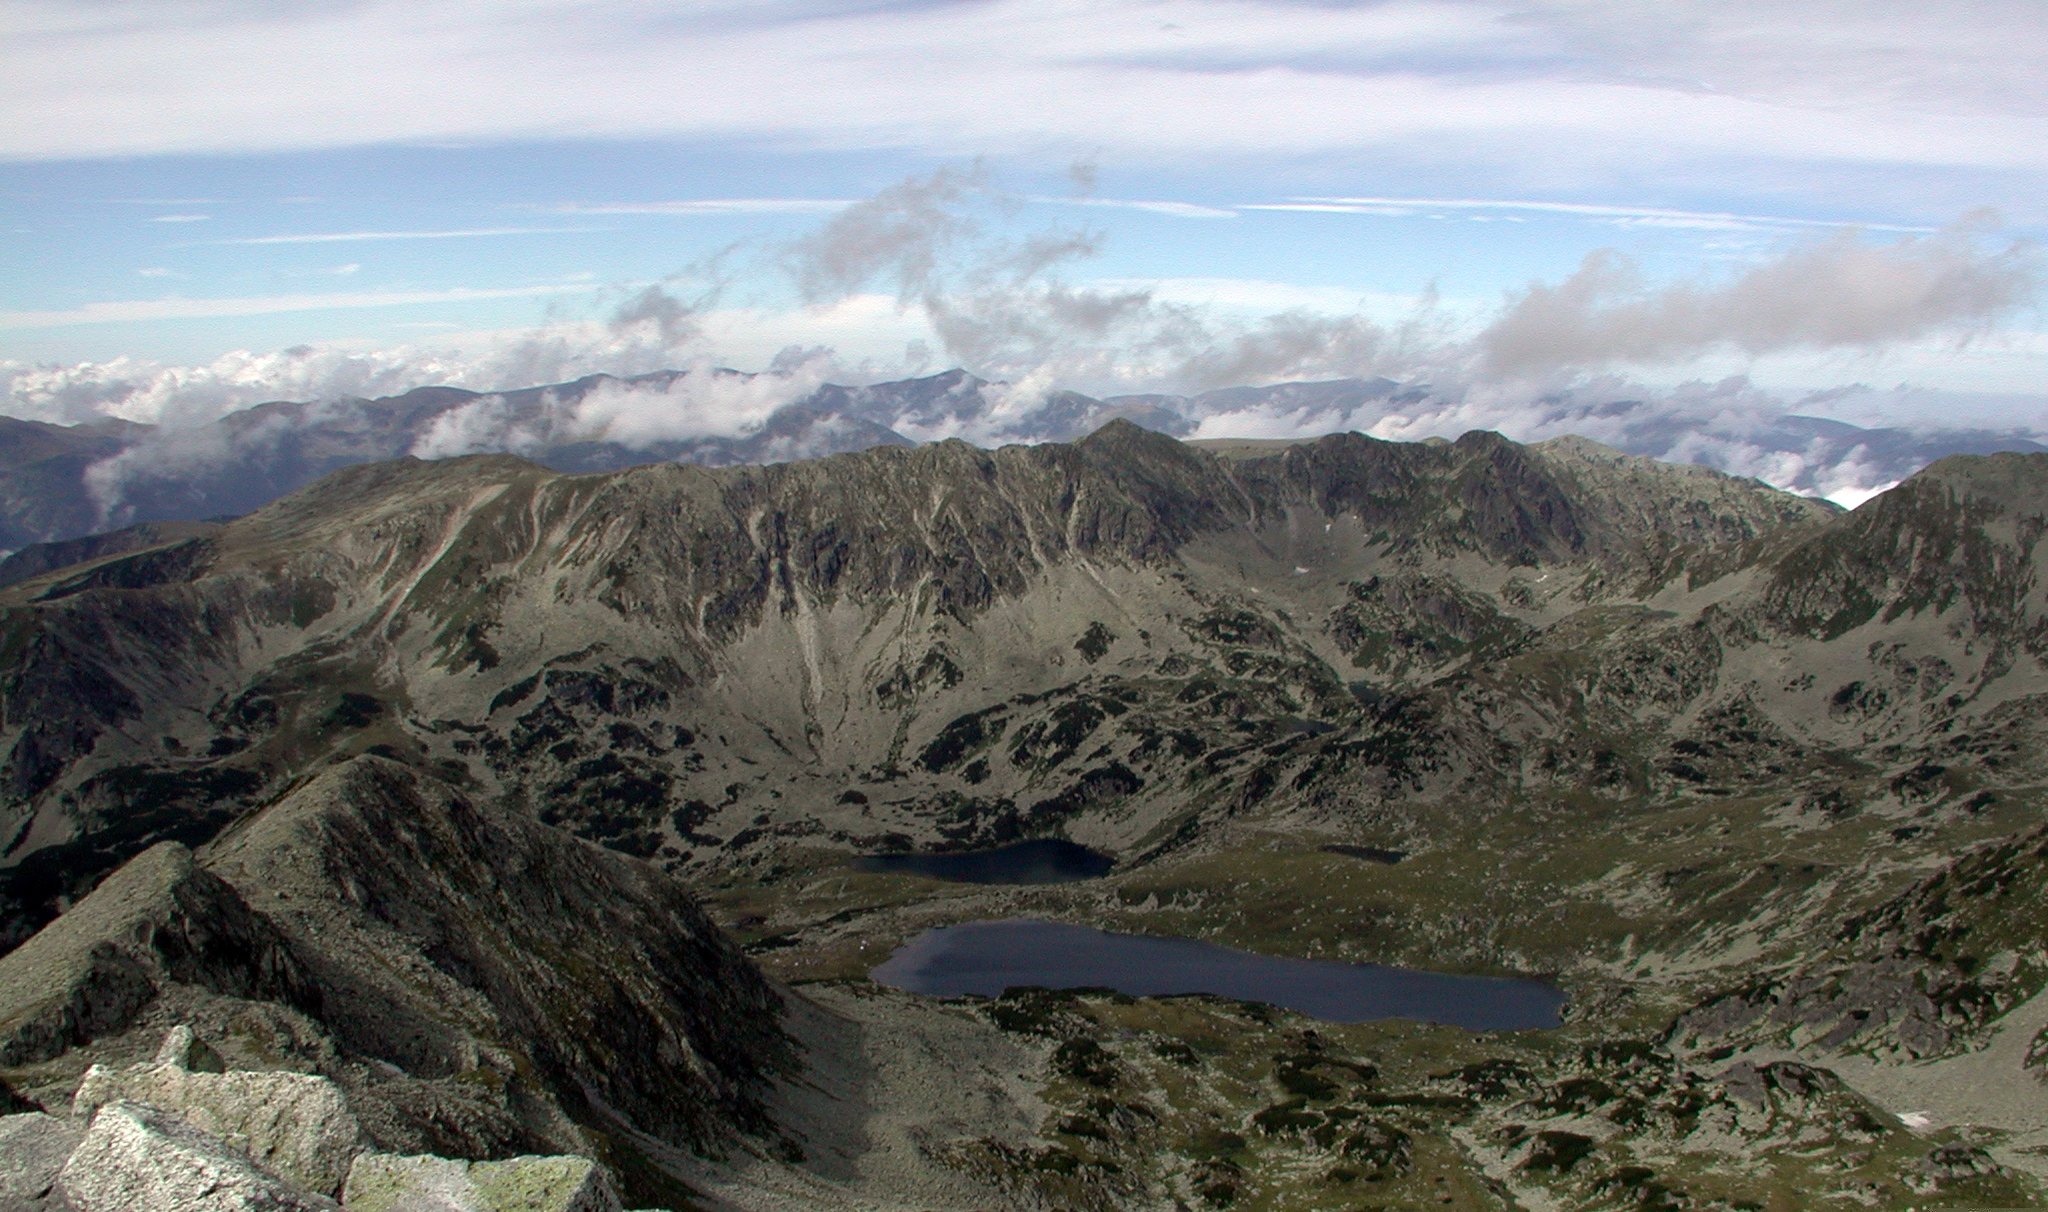 Munții Retezat / Centrální jezero Bucura, foceno z nejvyššího vrcholku. 